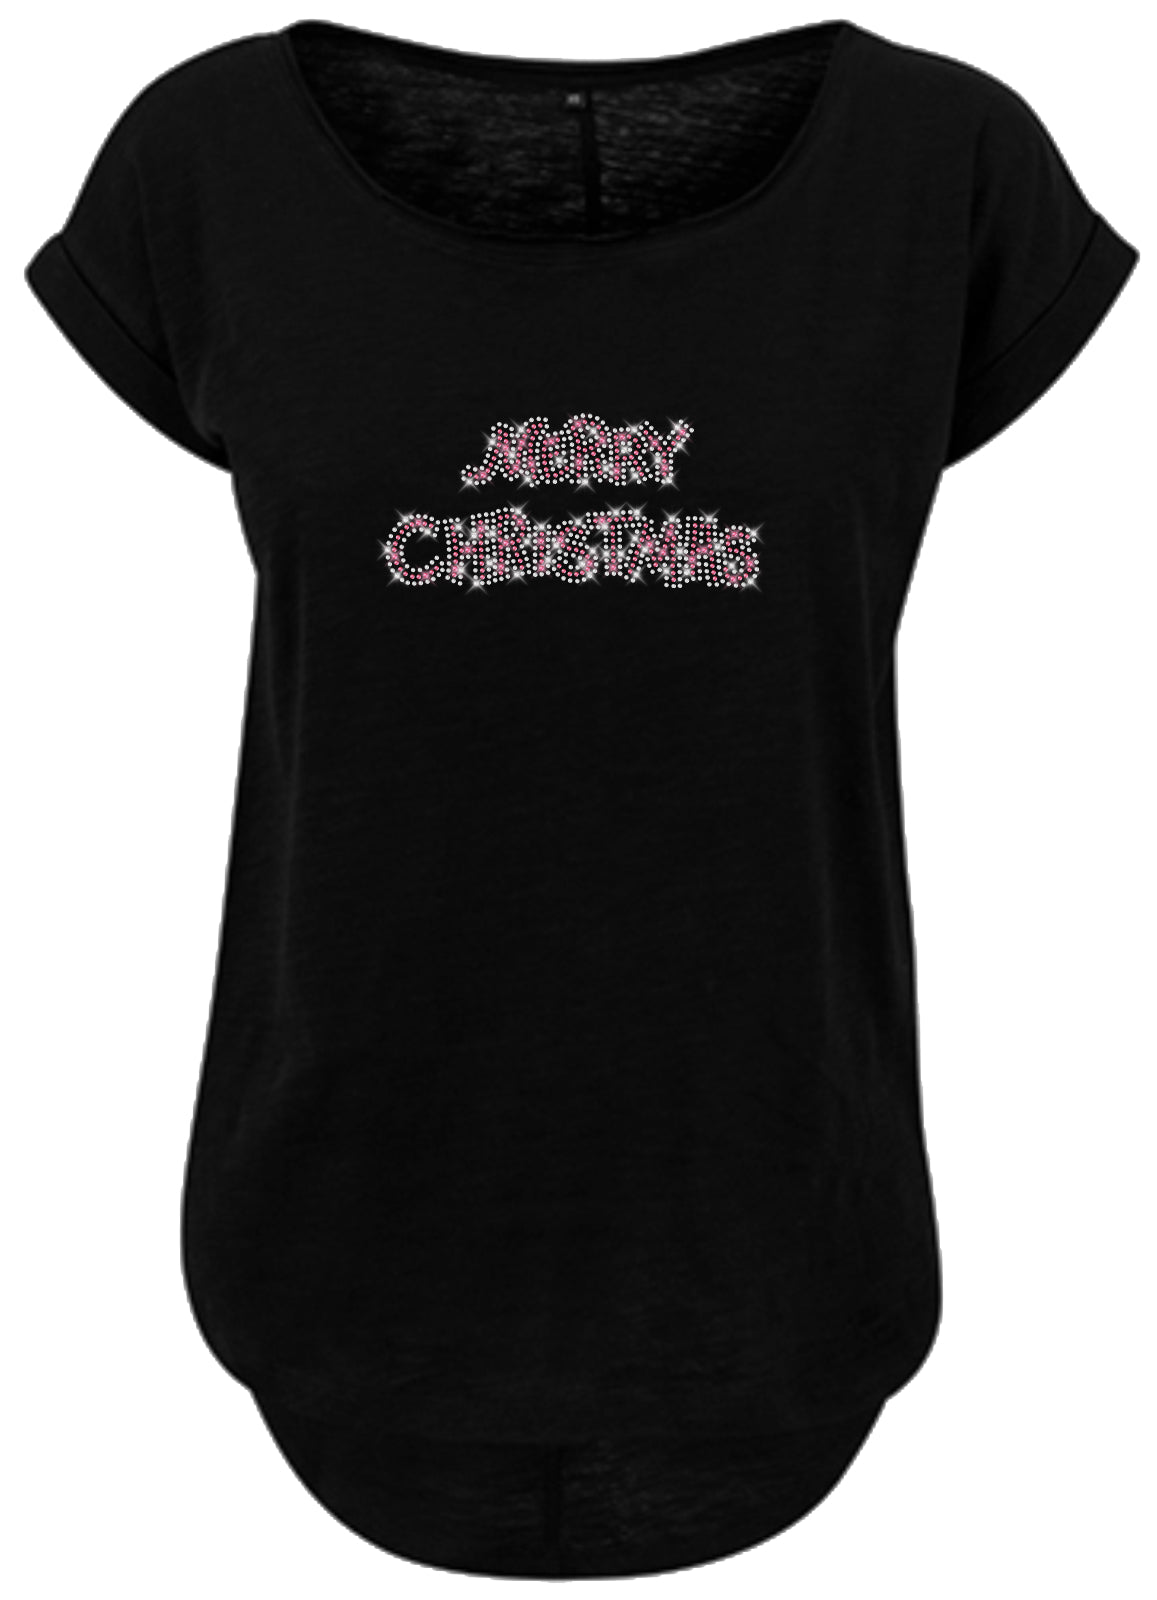 Blingeling®Shirts Damen T-Shirt   Merry Christmas Schriftzug in Strass Kristall und Pink